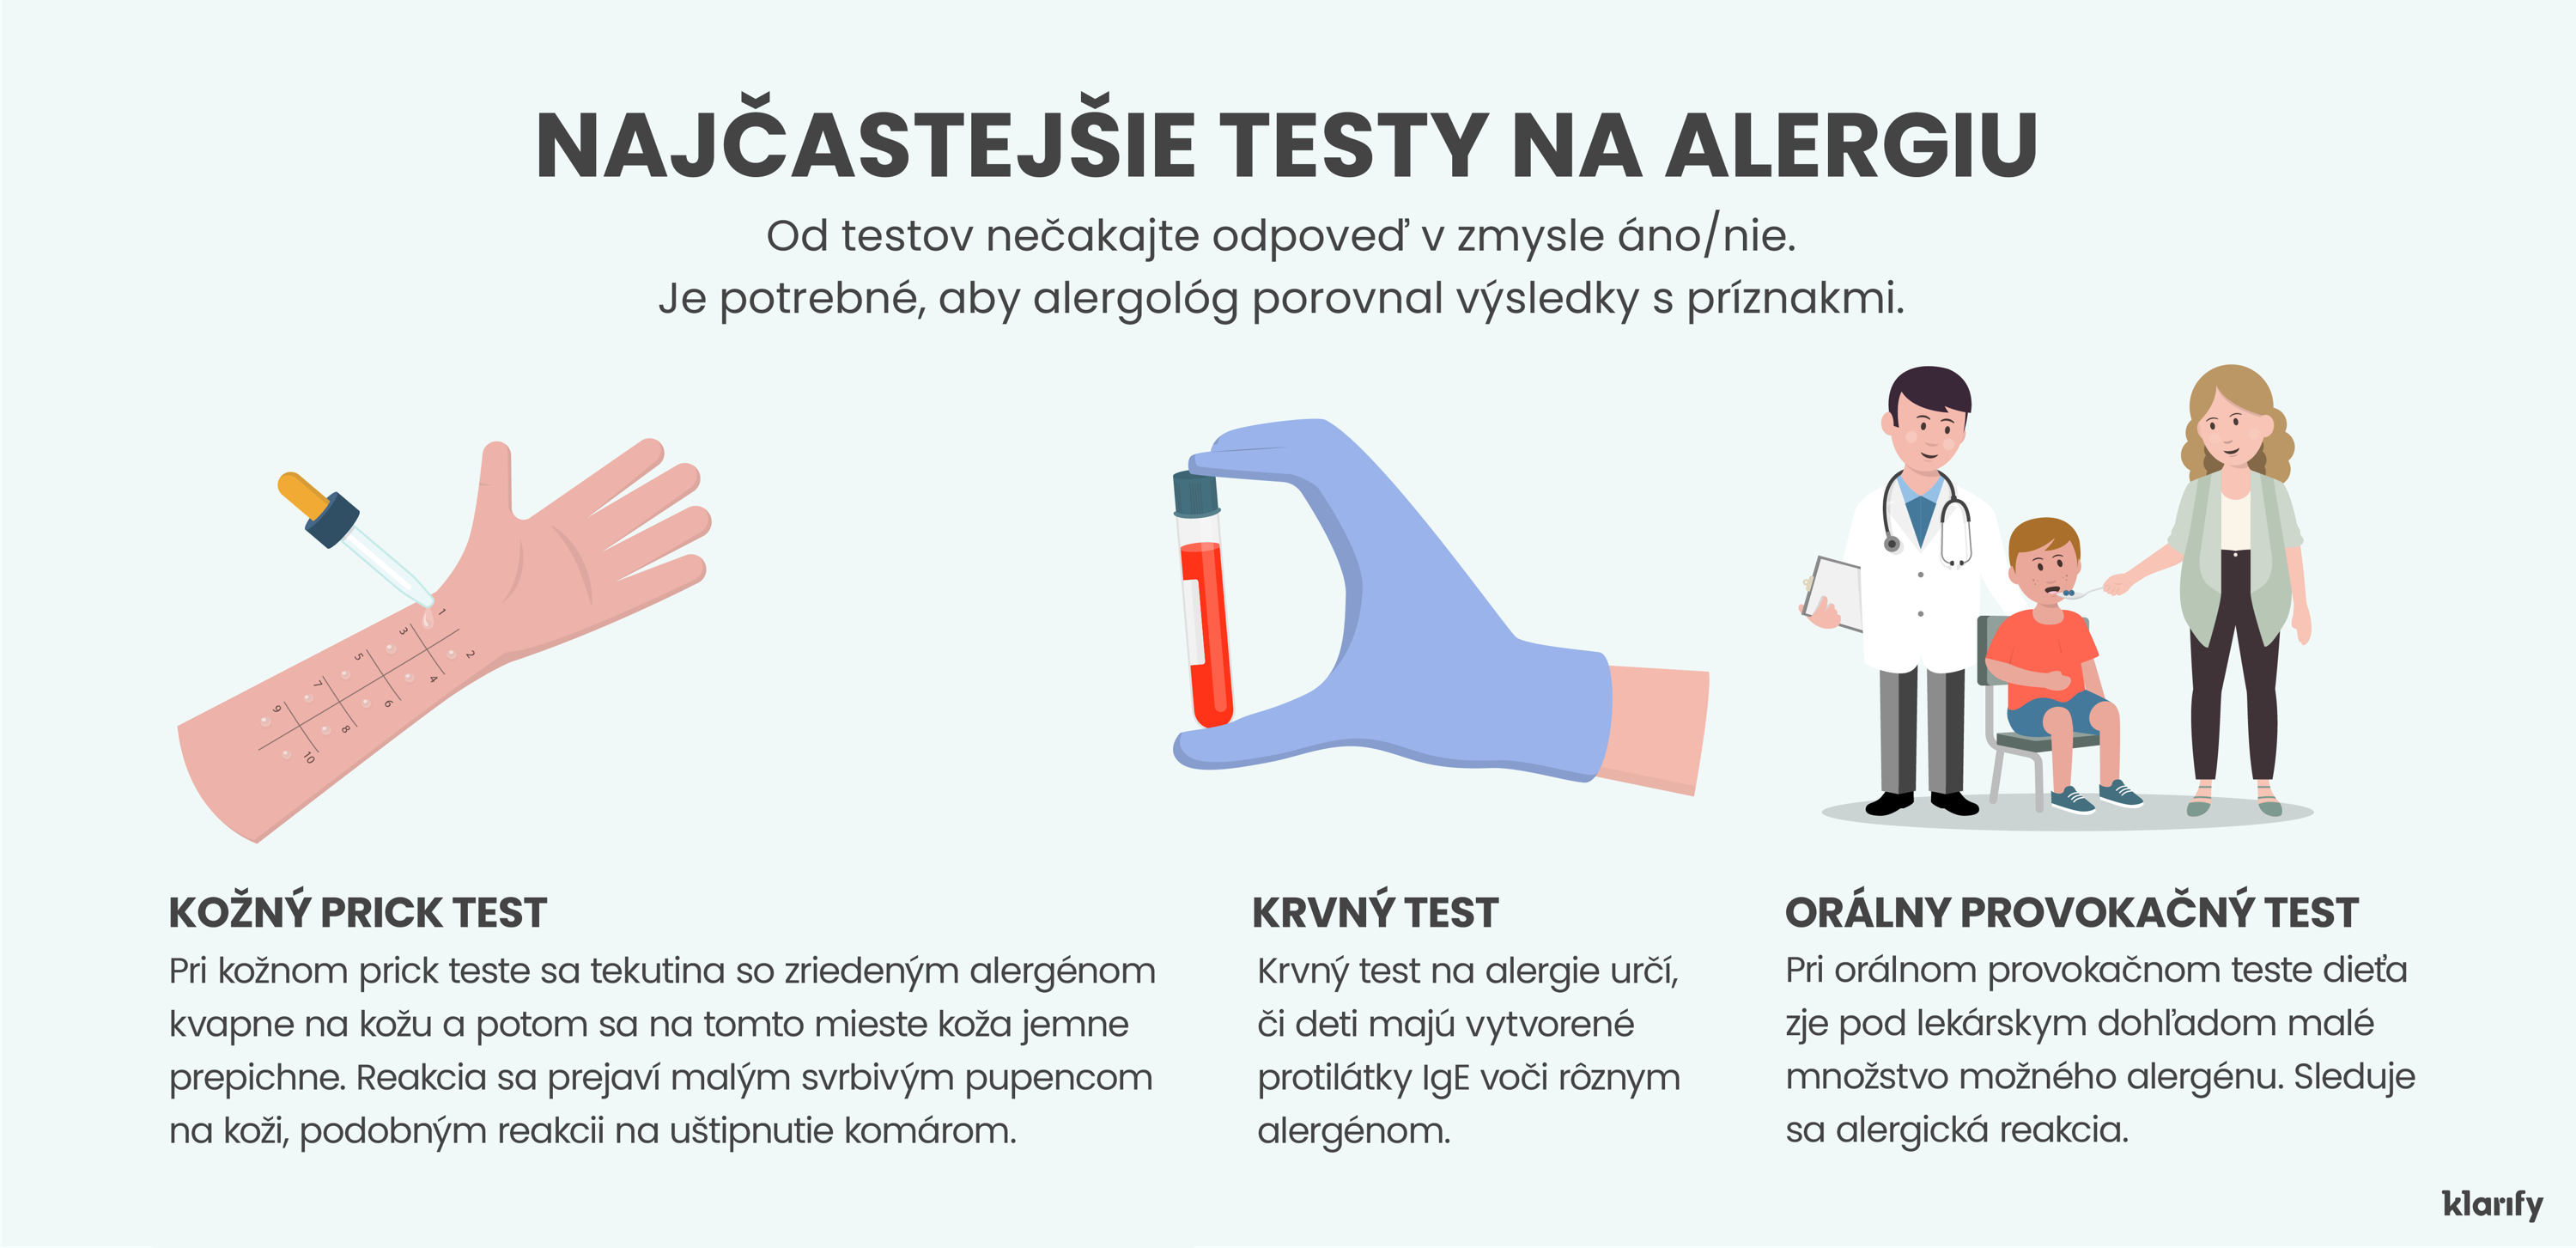 Infografika popisujúca testovanie na alergie u detí, ktorá zobrazuje tri najbežnejšie typy testov. Podrobnosti infografiky sa nachádzajú nižšie